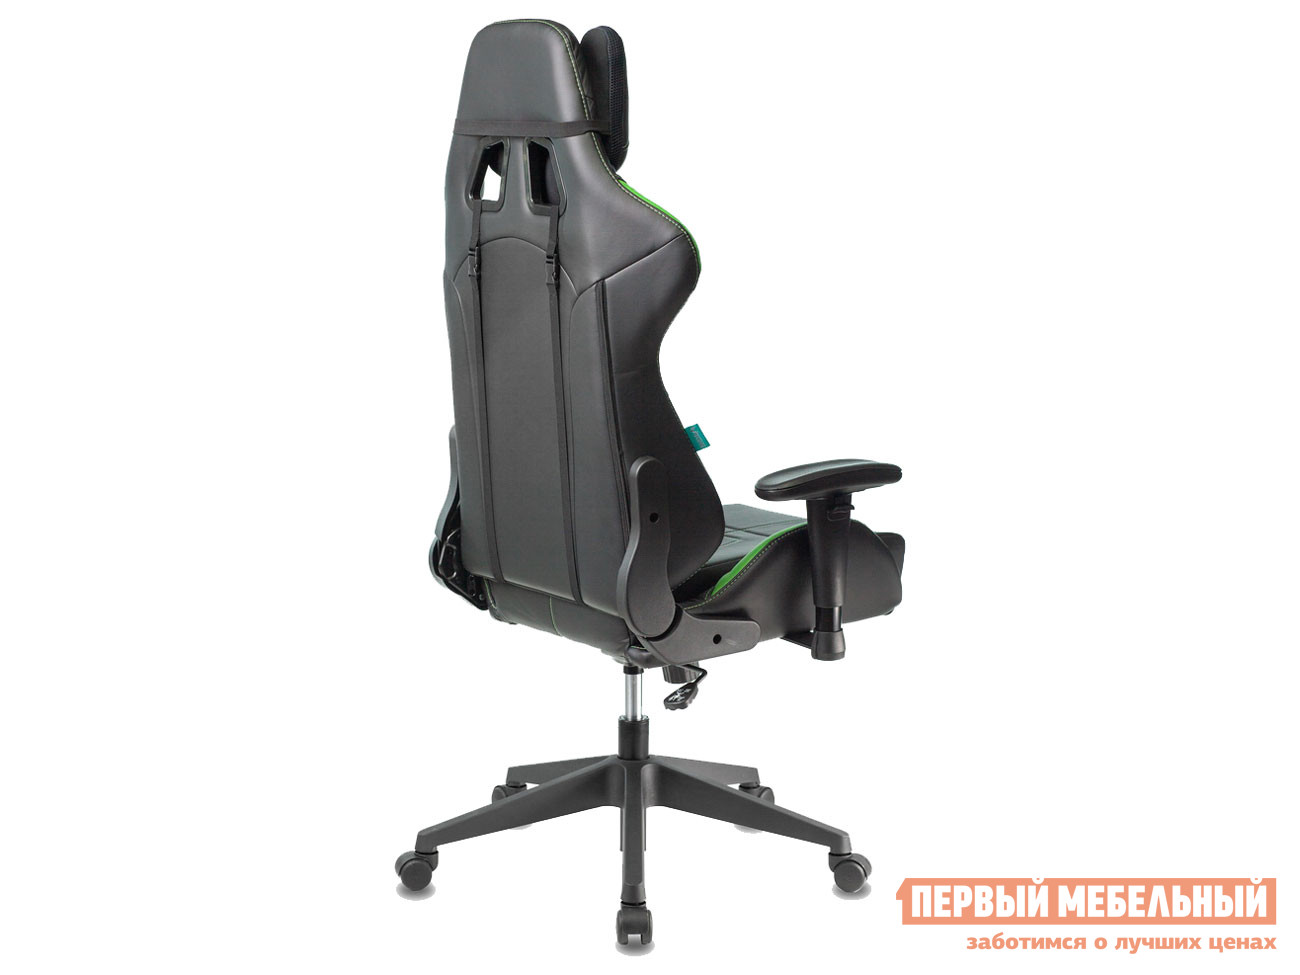 Игровое кресло  VIKING 5 AERO Зеленый / Черный иск. кожа от Первый Мебельный